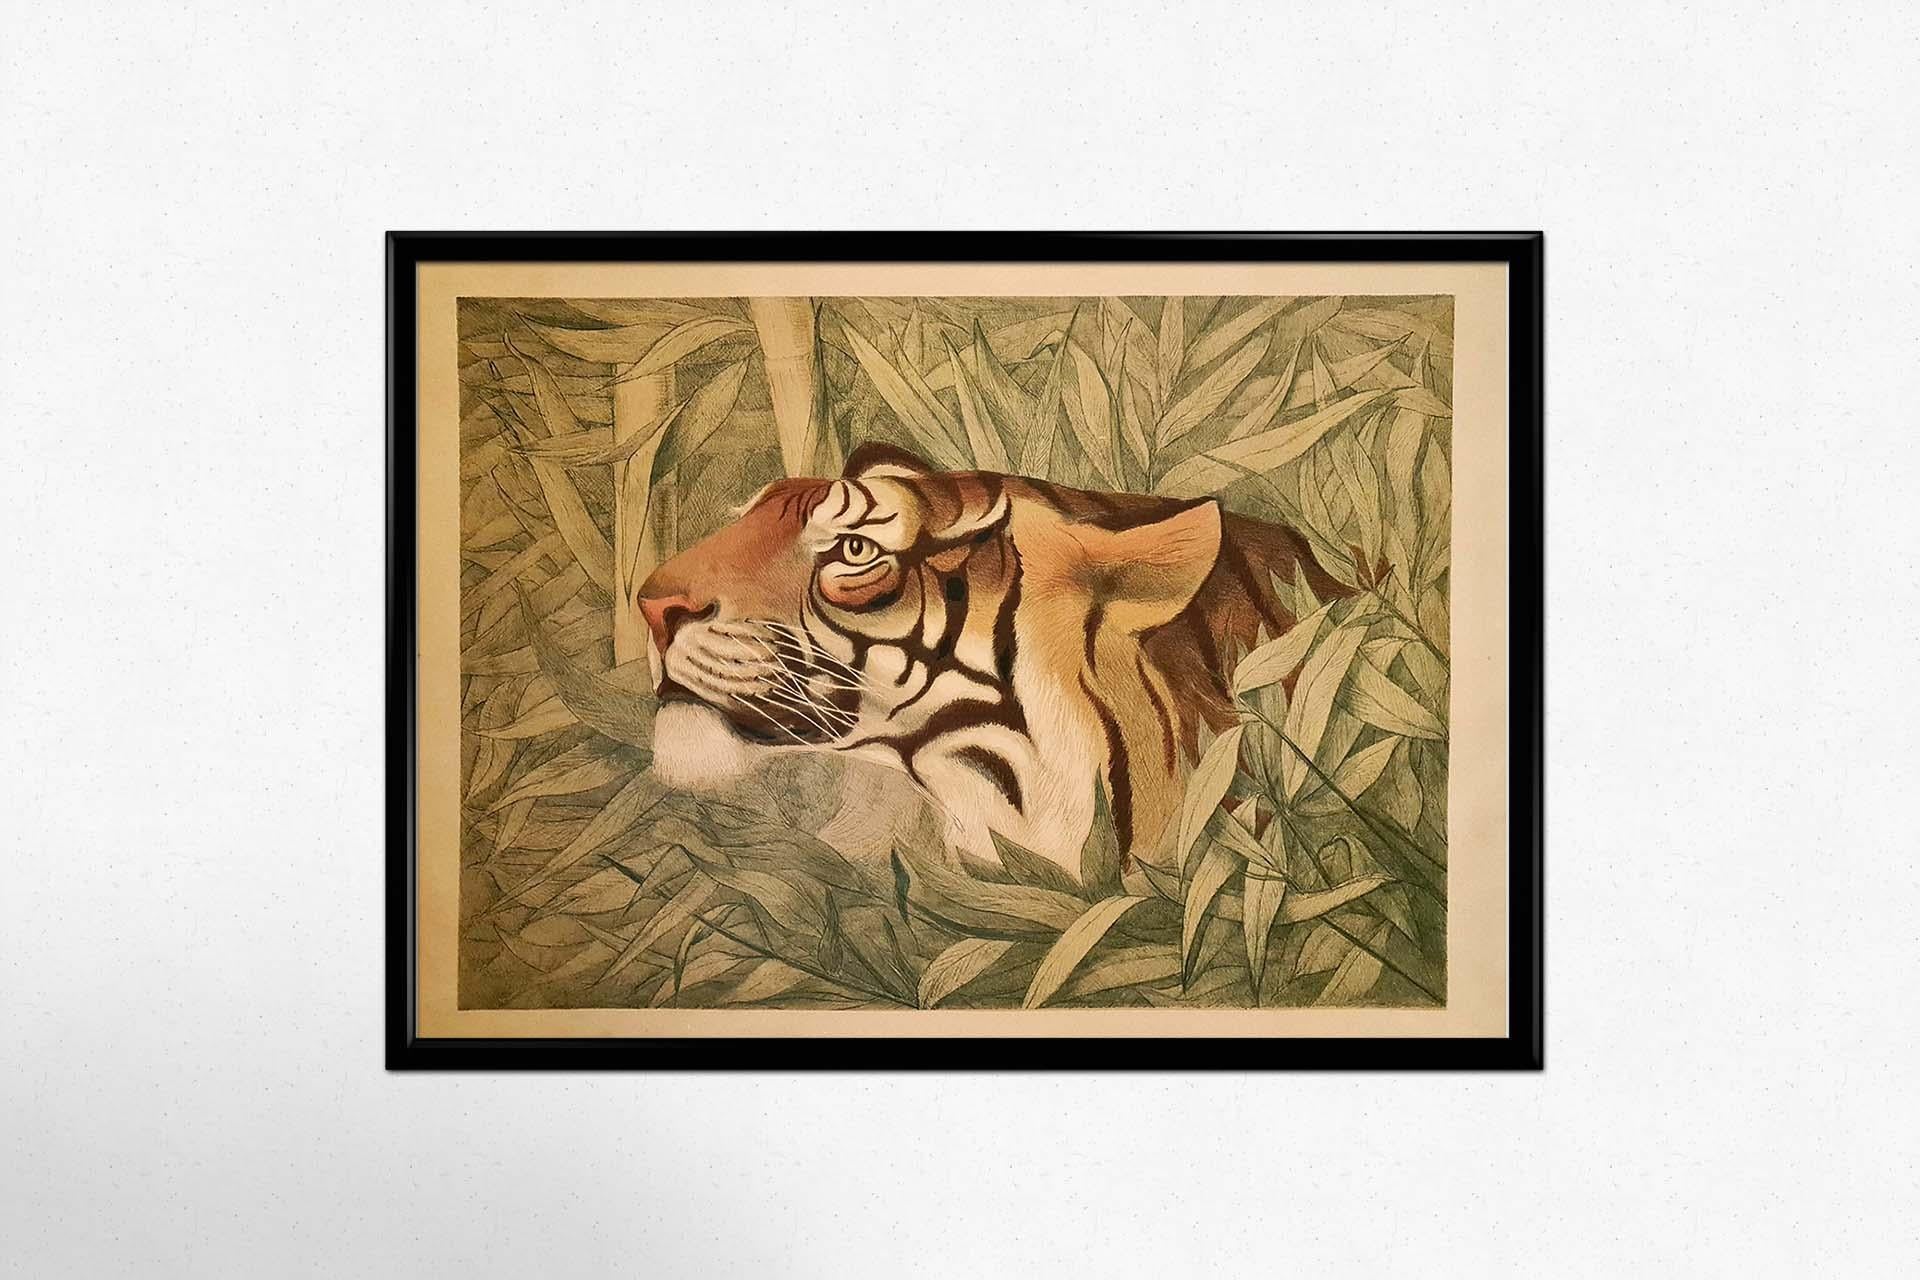 Drucken in Farbe

Sehr schönes Plakat aus den 1920er Jahren mit der Darstellung eines Tigers.

Tiere - Fauvismus